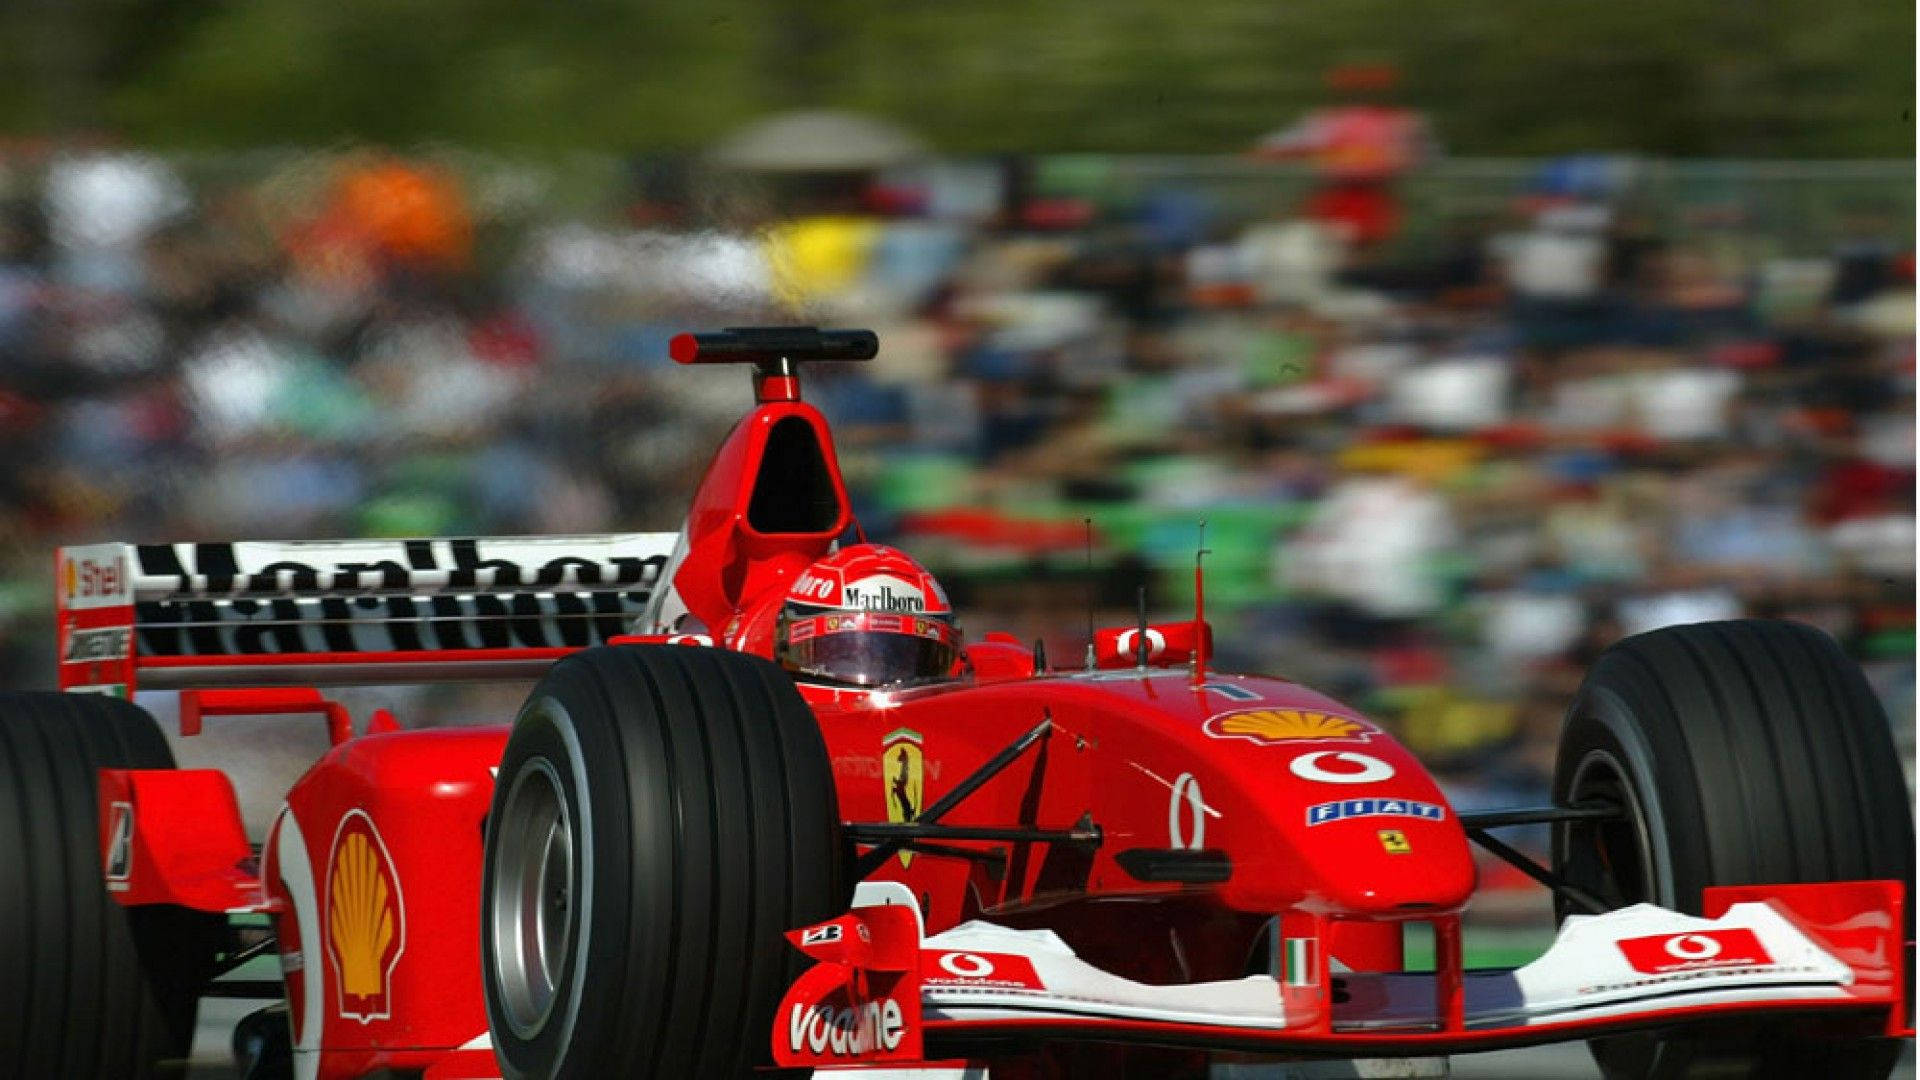 Astounding Racer Michael Schumacher